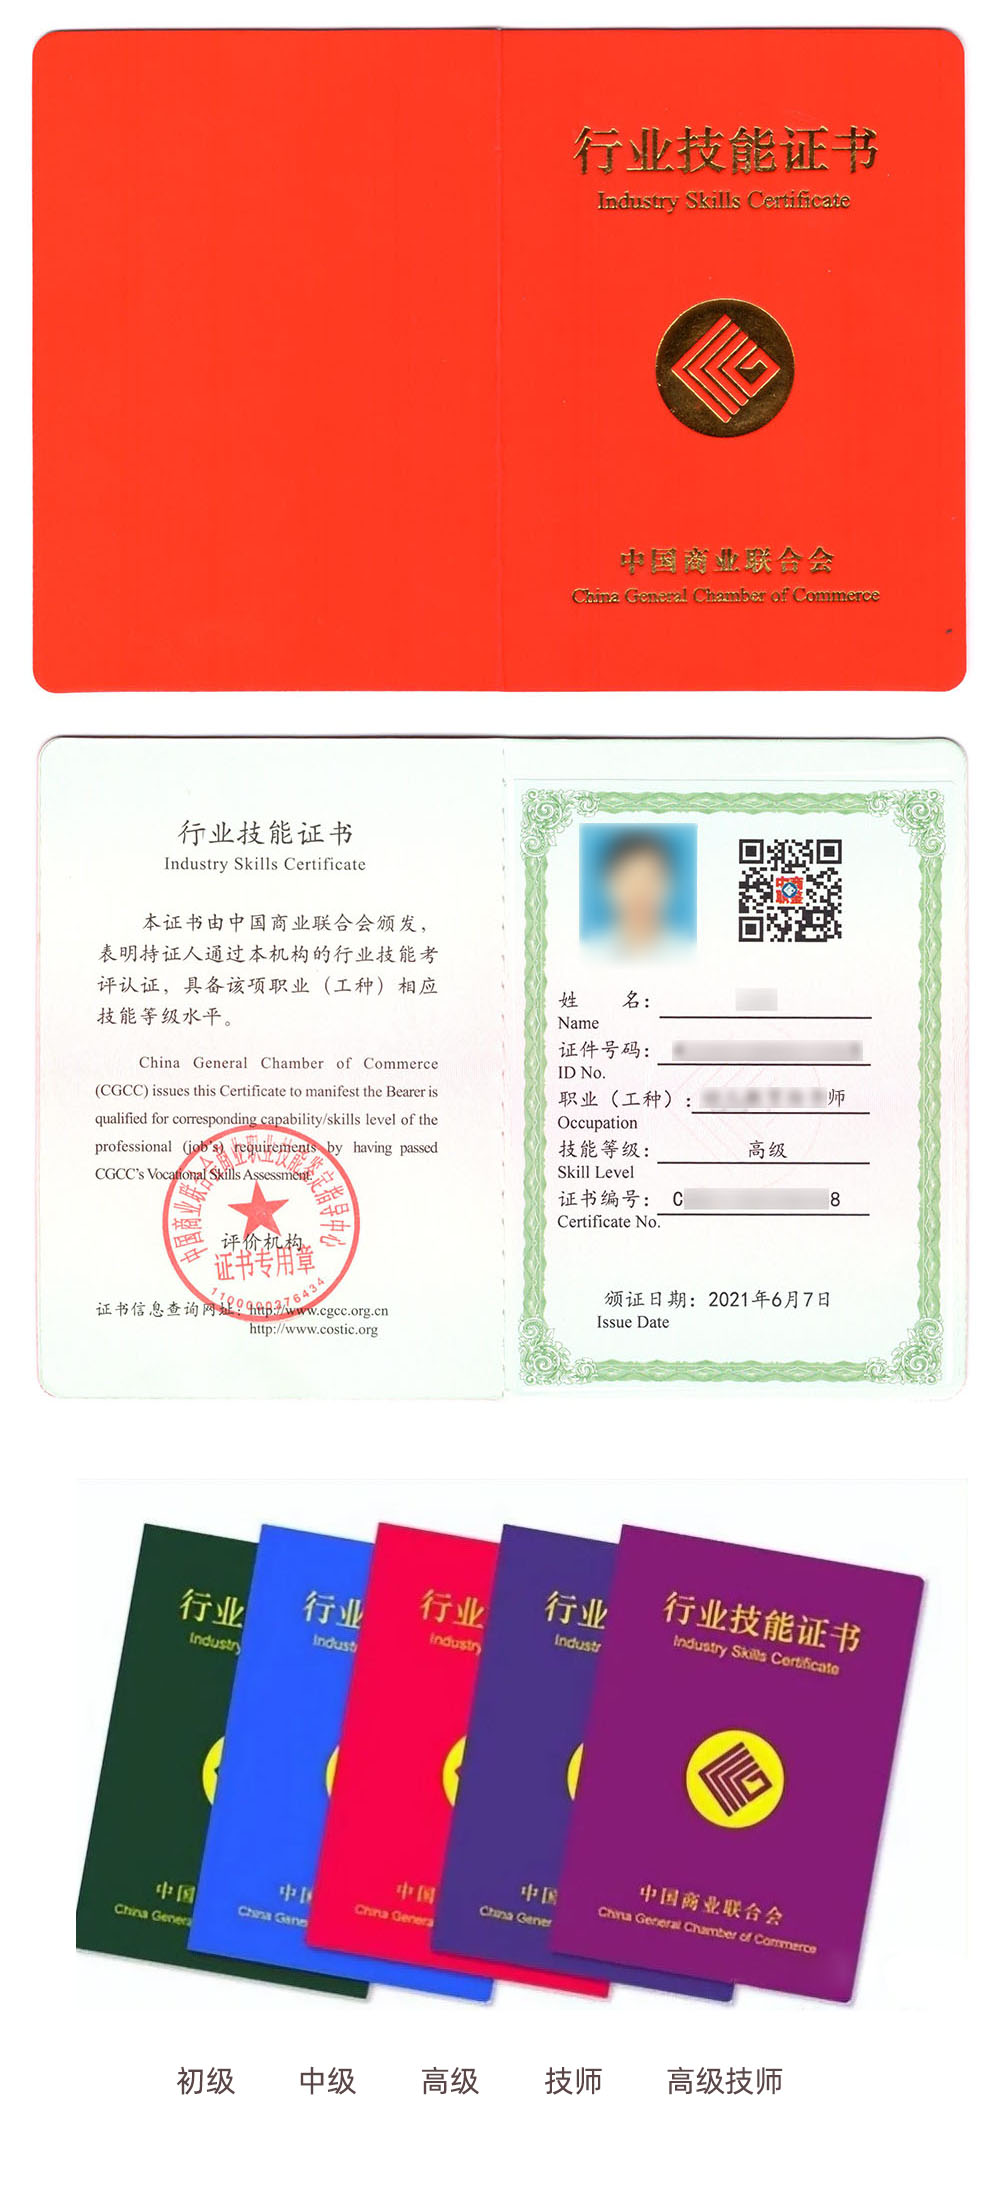 中国商业联合会商业职业技能鉴定中心 行业技能证书 创业指导师证证书样本